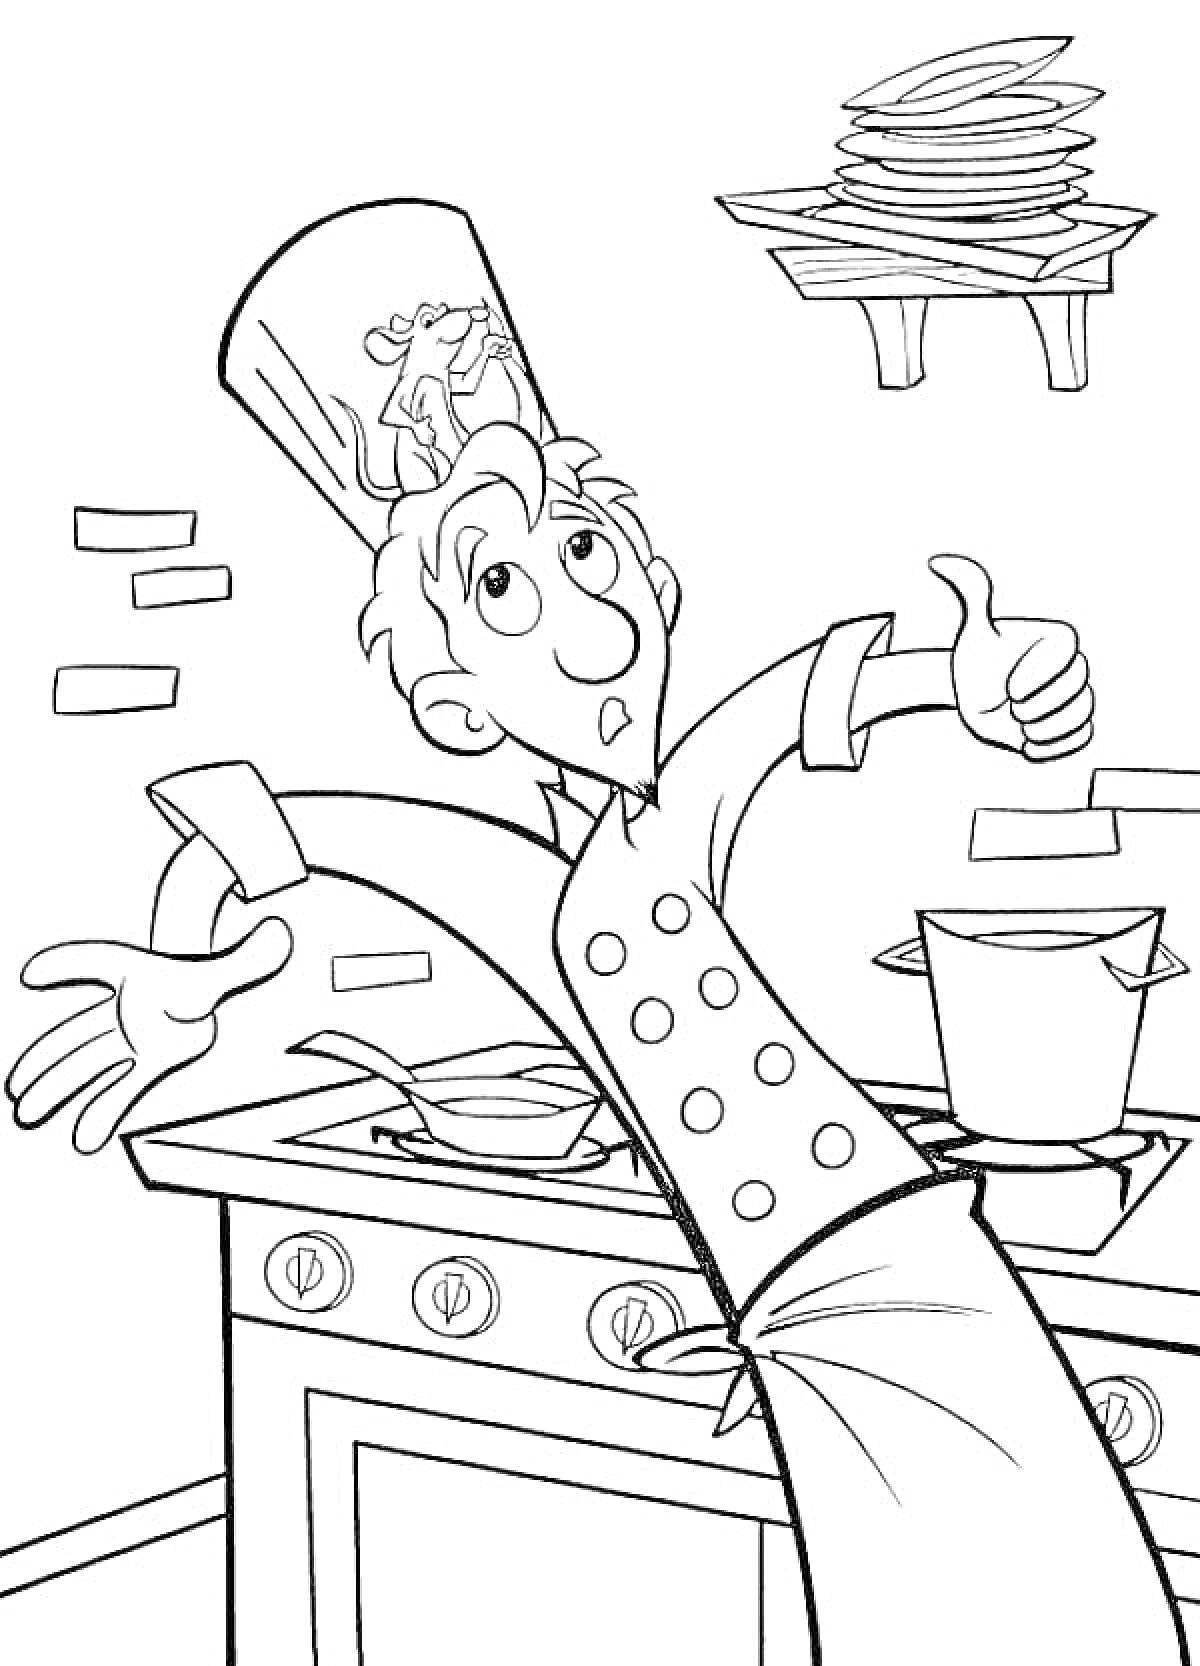 Раскраска Шеф-повар на кухне с крысой под поварским колпаком, плита с кастрюлями, стопка тарелок на полке